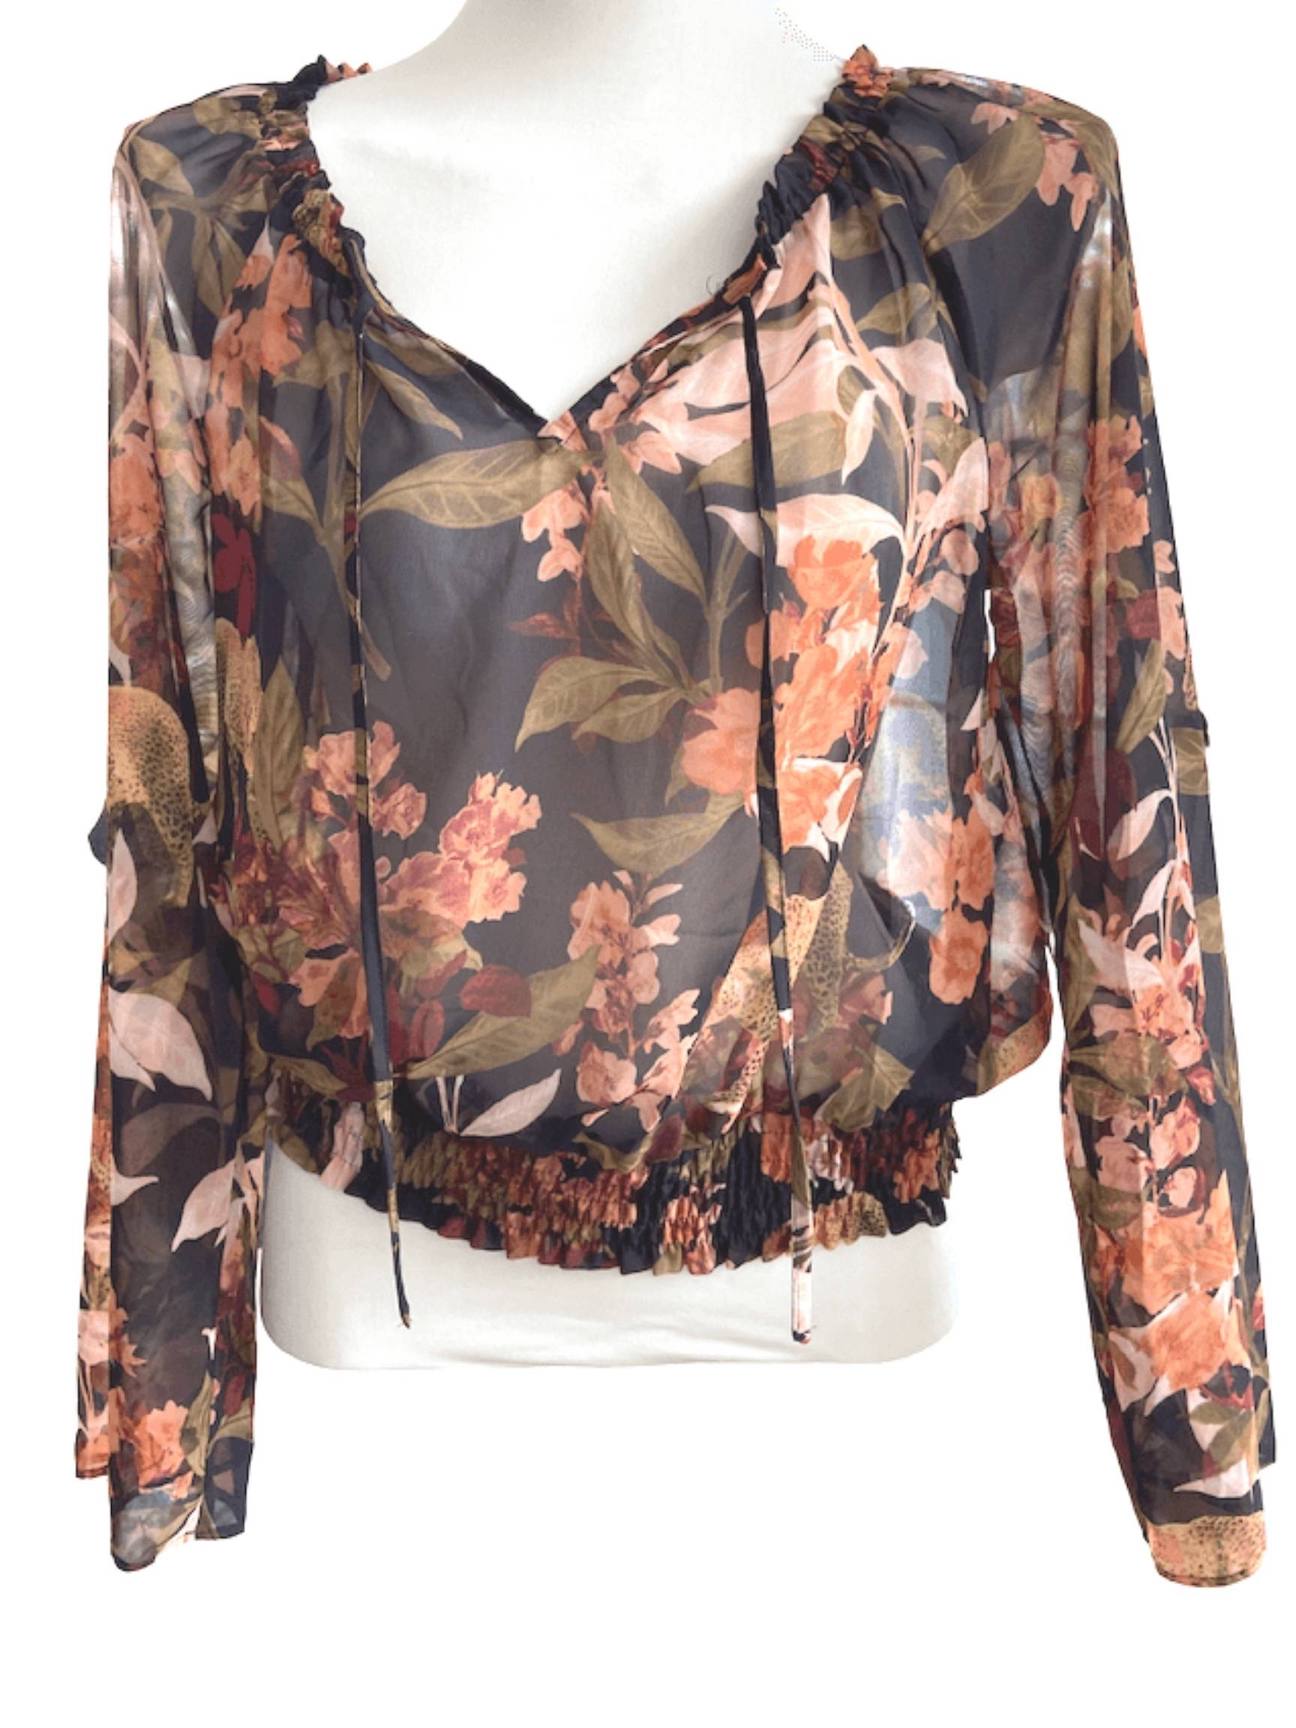 Soft Autumn INC floral print blouse